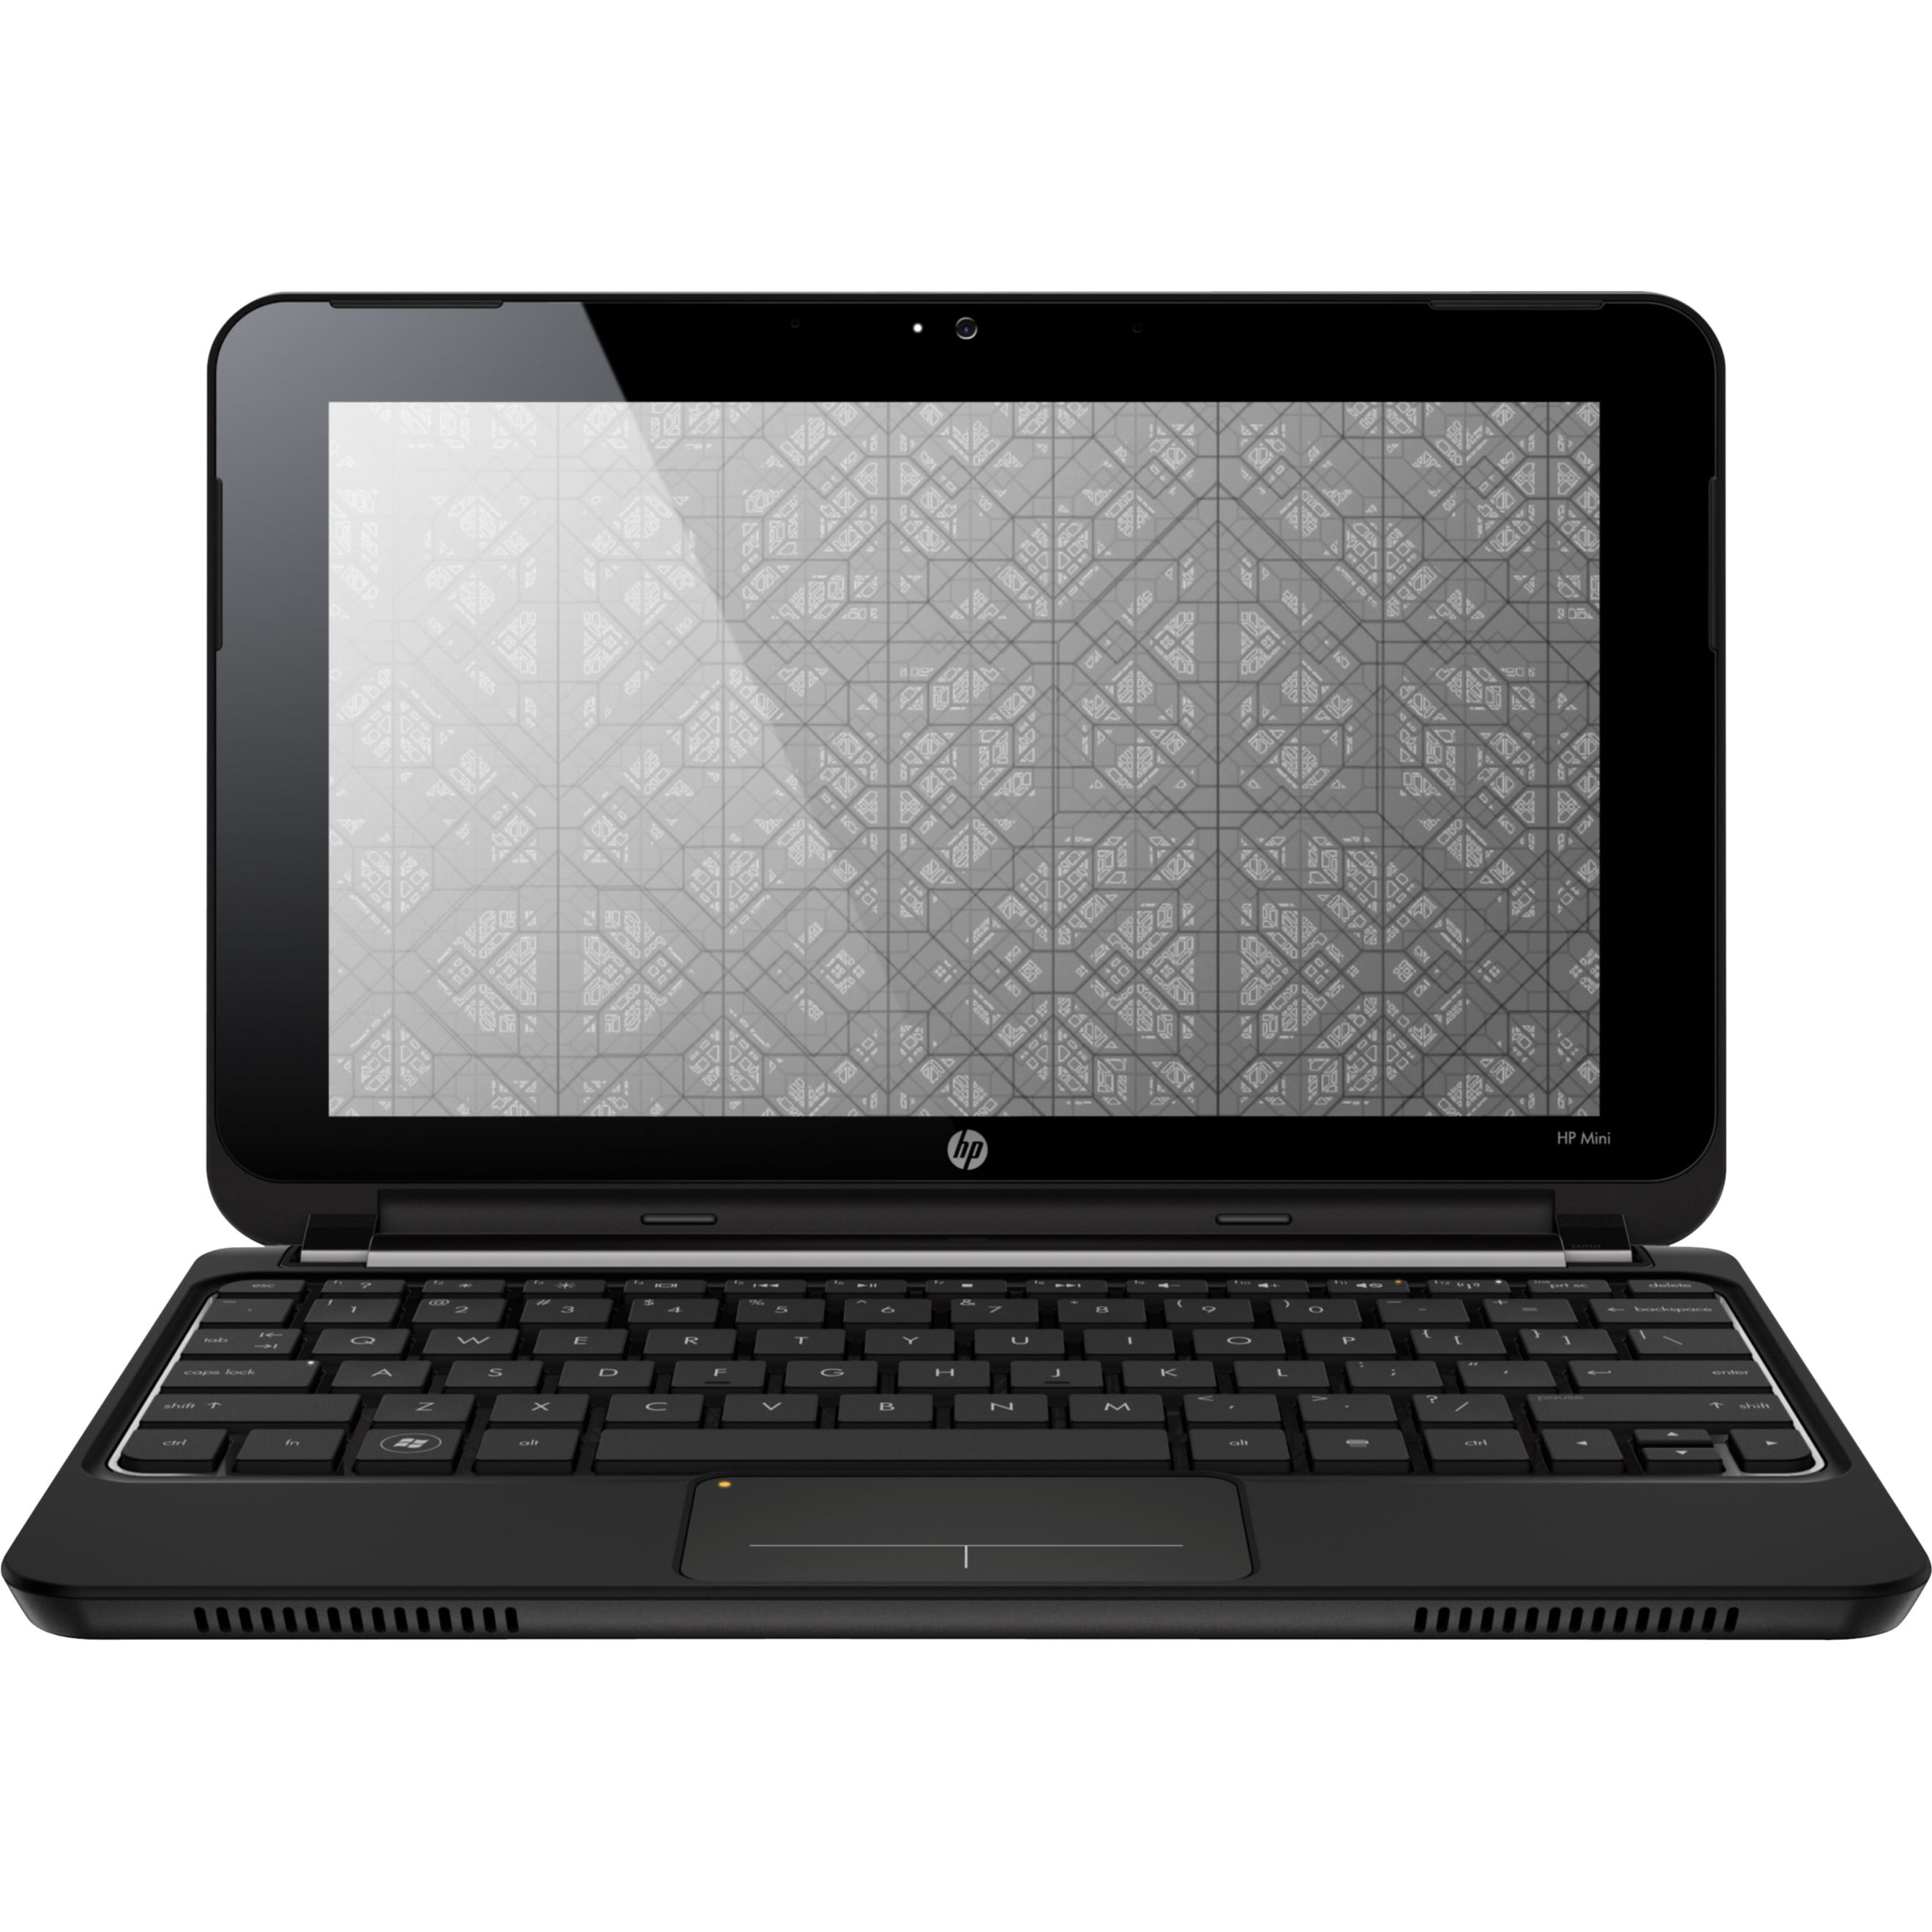 anders Startpunt koppel HP Mini 10.1" Netbook, Intel Atom N450, 1GB RAM, 160GB HD, Windows XP Home,  210-1041NR (Refurbished) - Walmart.com